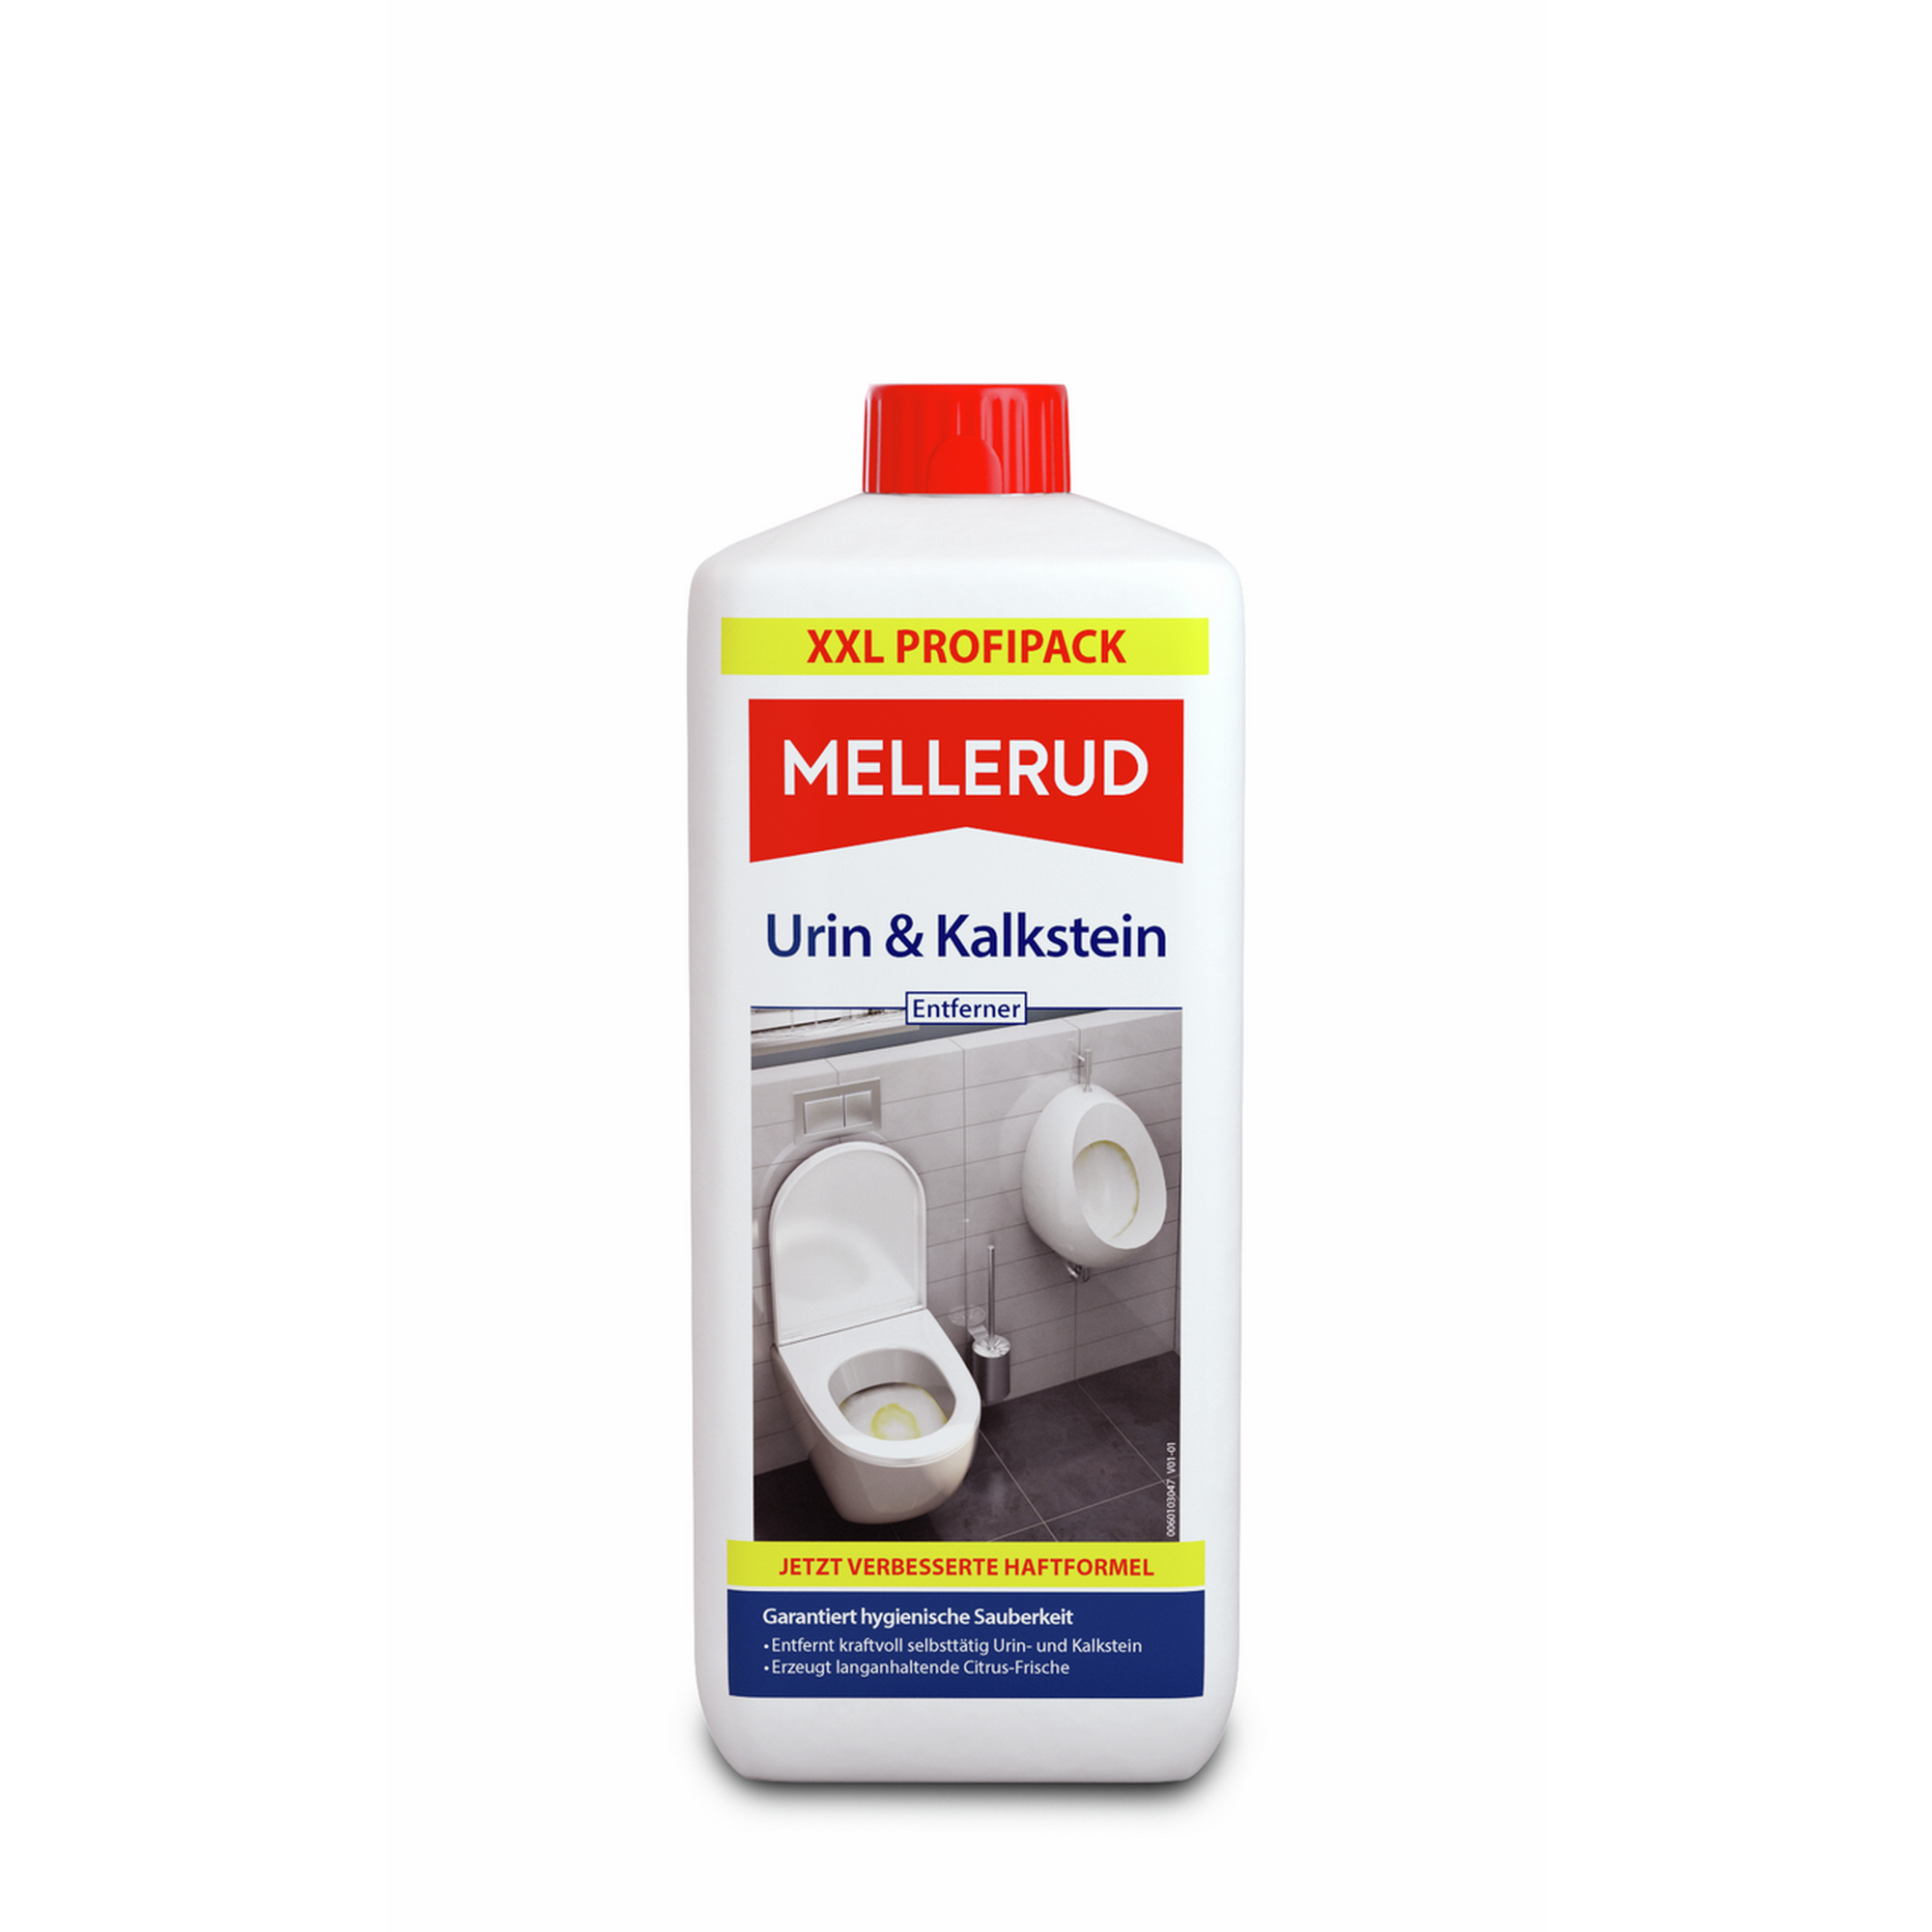 Urin- und Kalksteinentferner 1,75 Liter + product picture